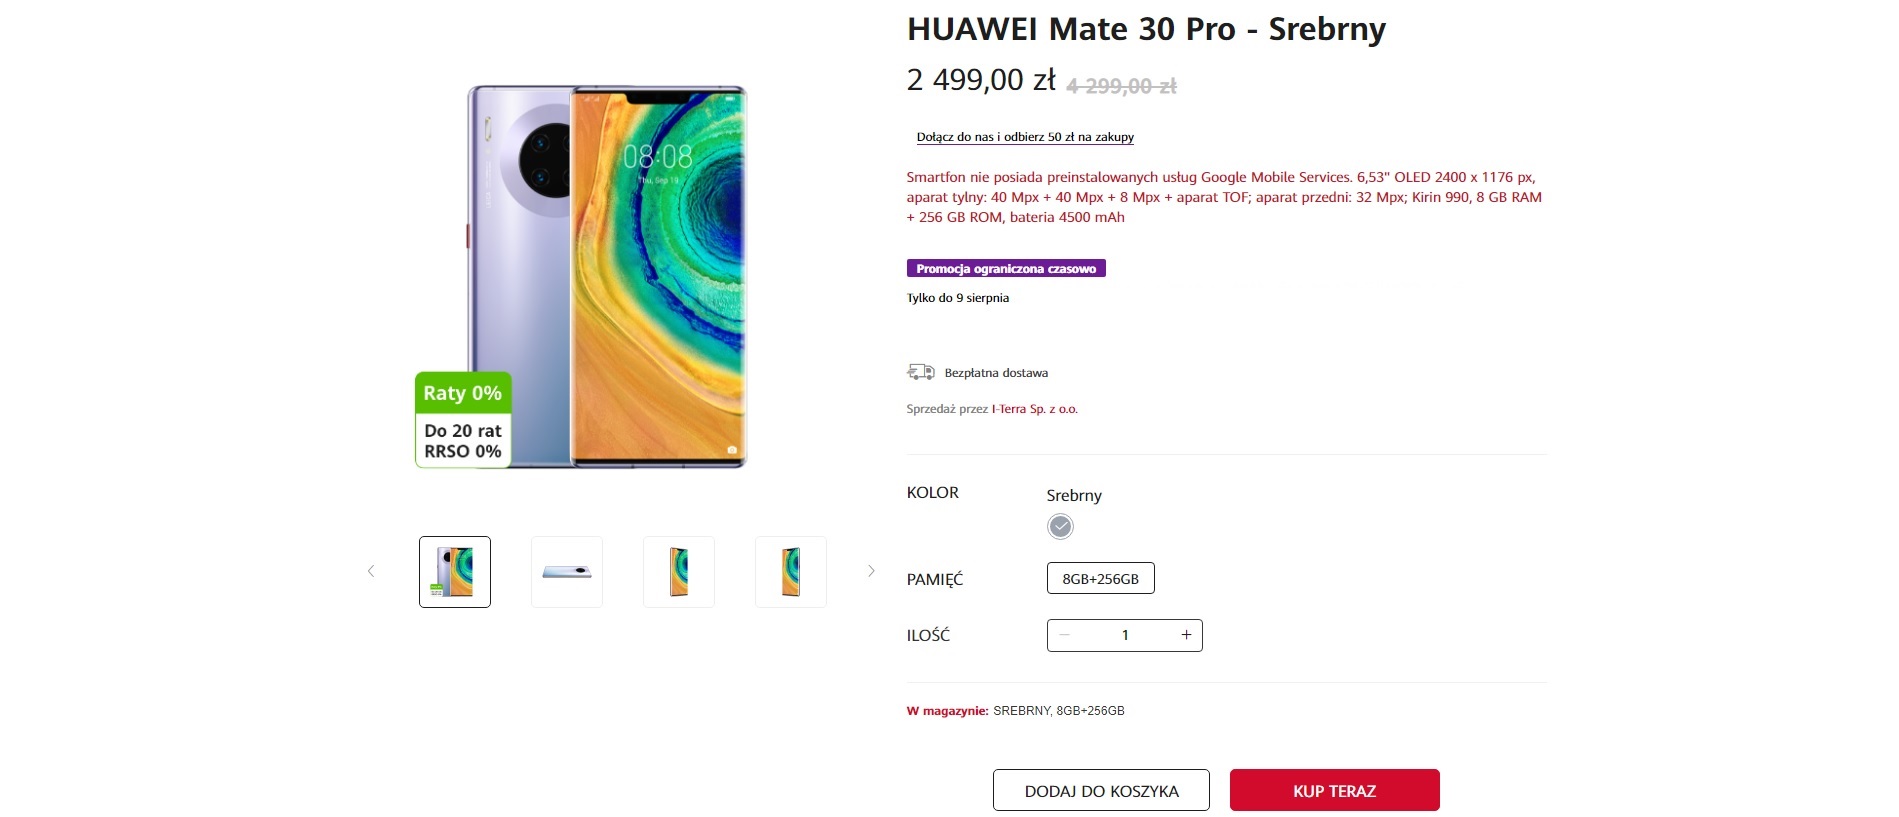 Huawei Mate 30 Pro promocja 2499 złotych huawei.pl